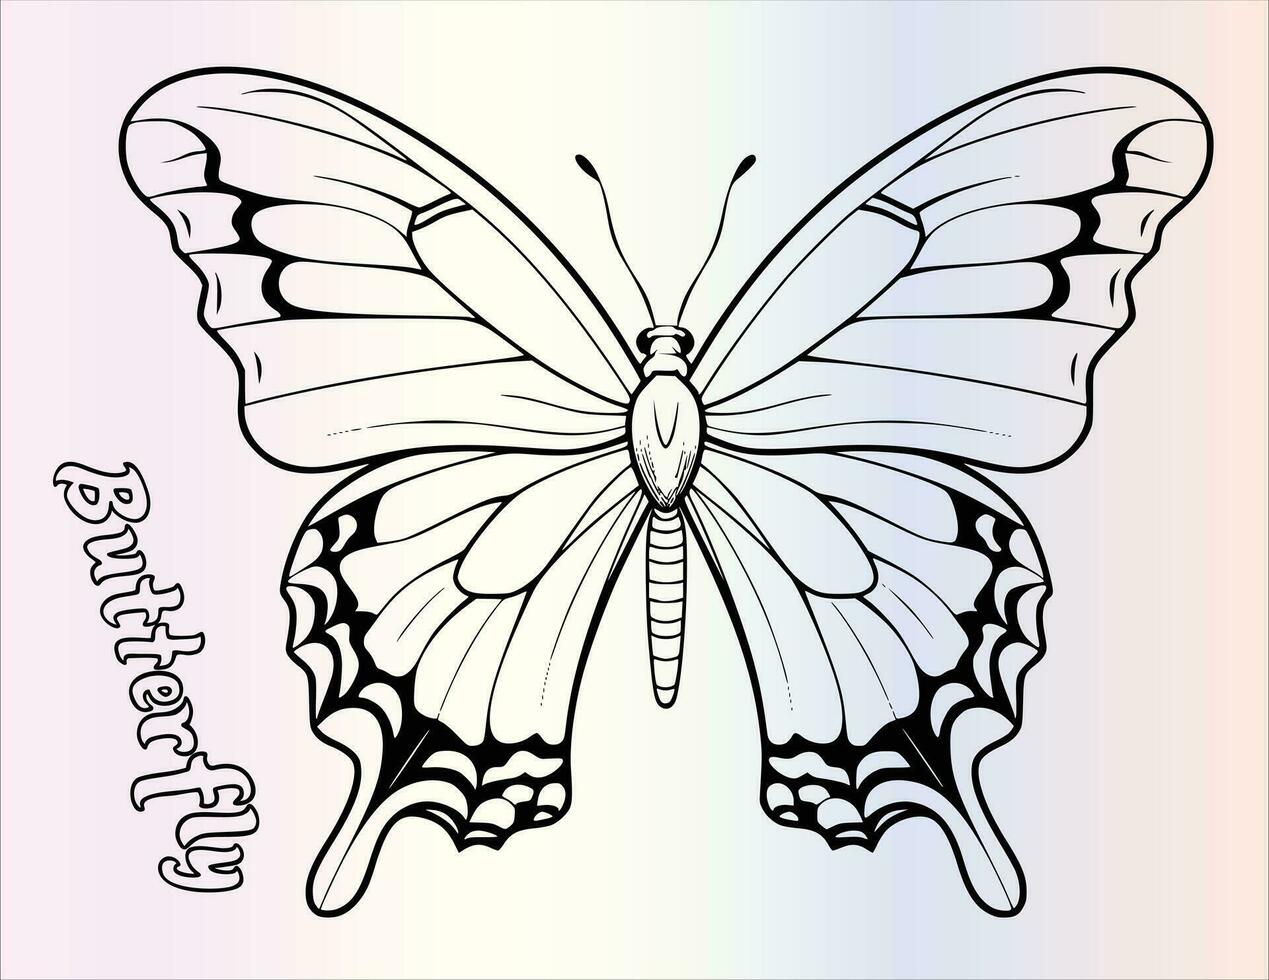 schattig vlinder kleur bladzijde tekening voor kinderen vector